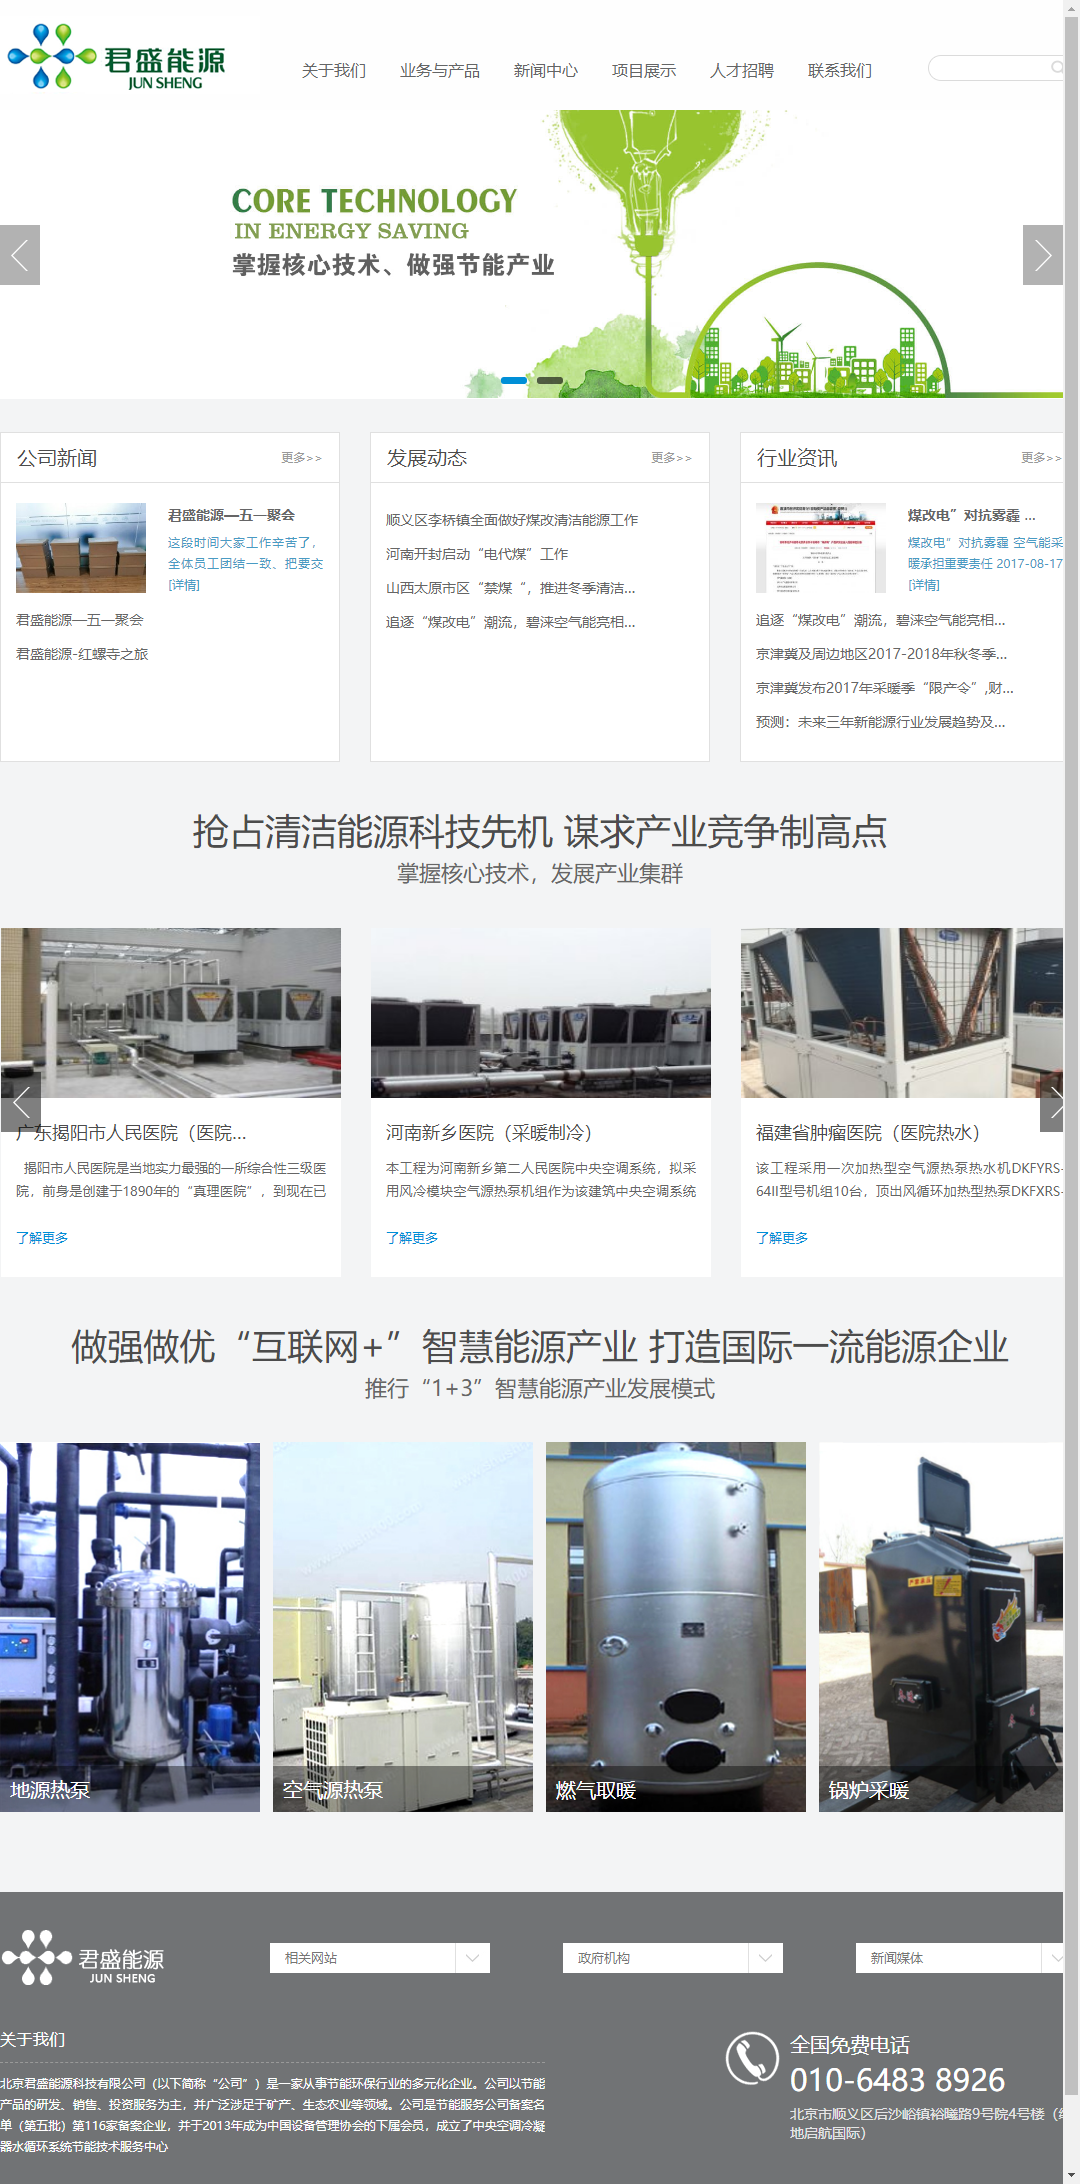 北京君盛能源科技有限公司网站案例